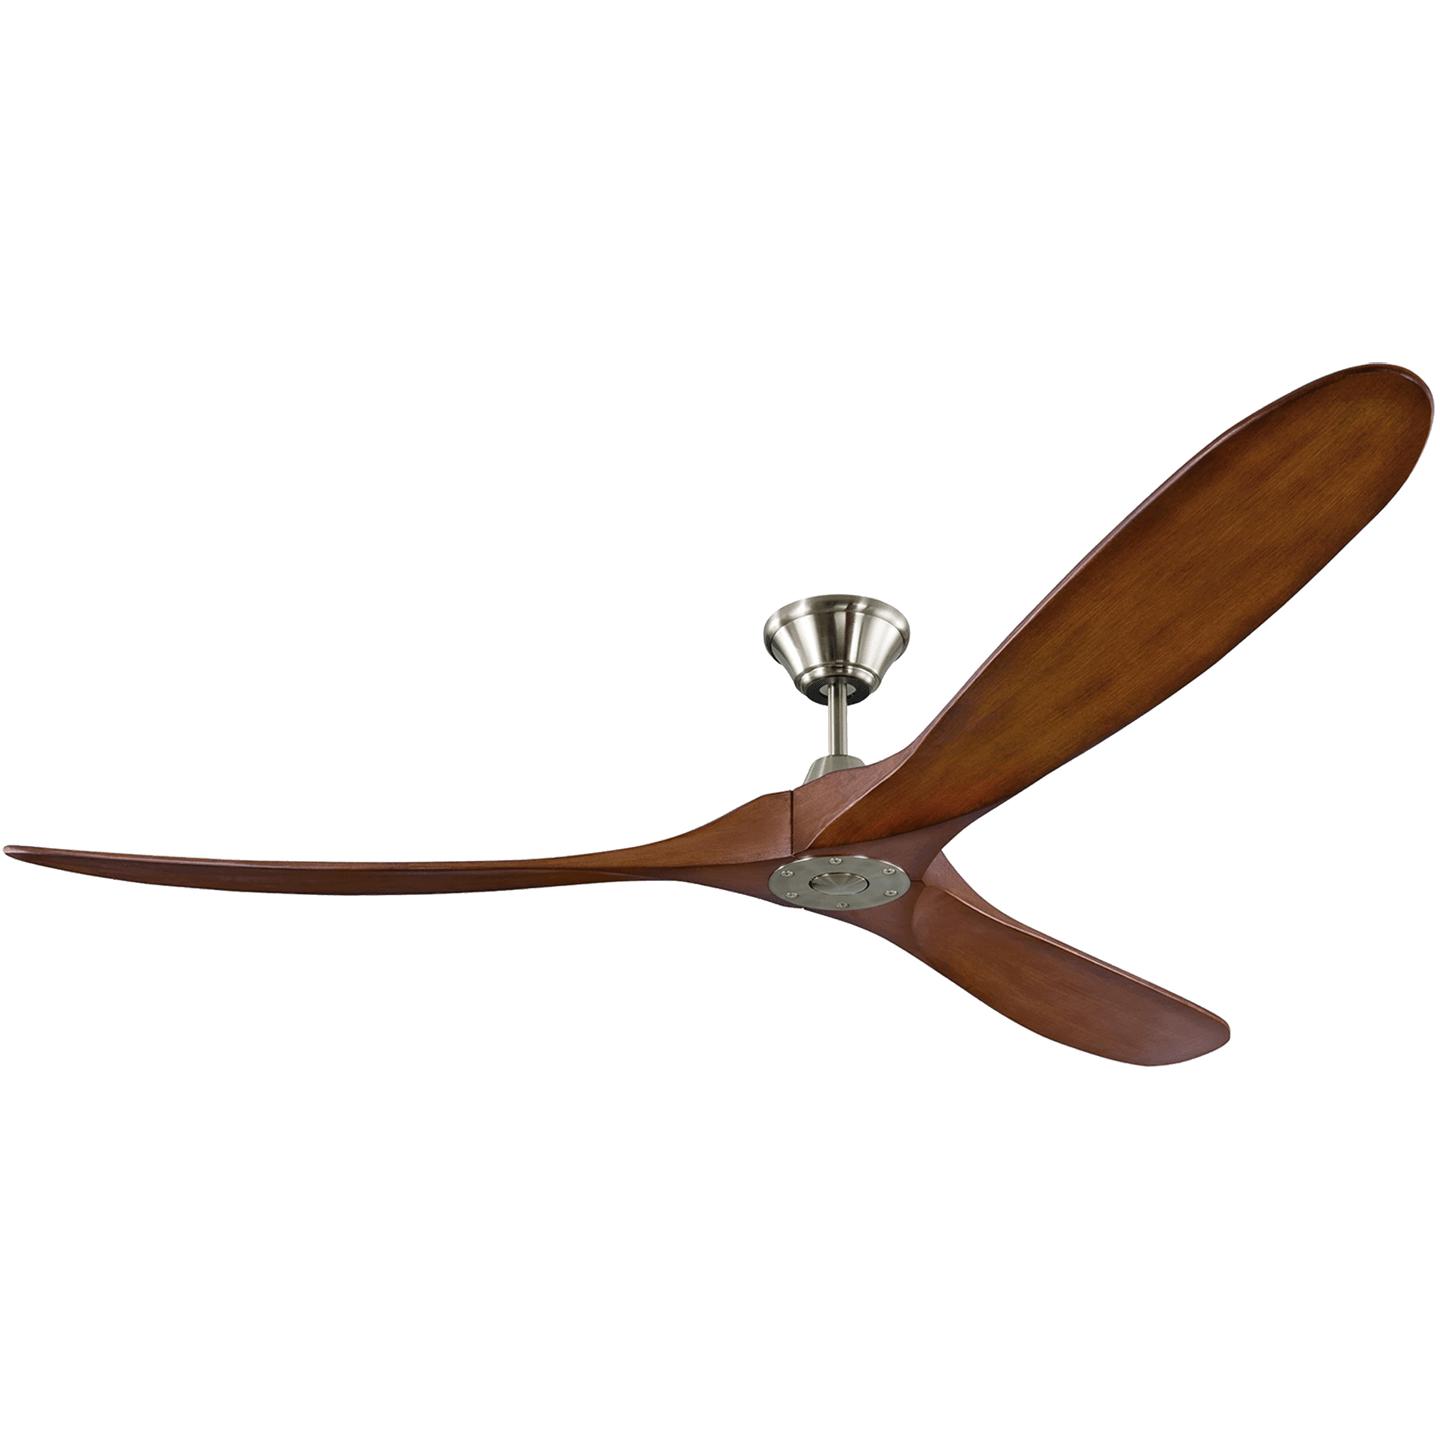 Купить Потолочный вентилятор Maverick 70" Ceiling Fan в интернет-магазине roooms.ru